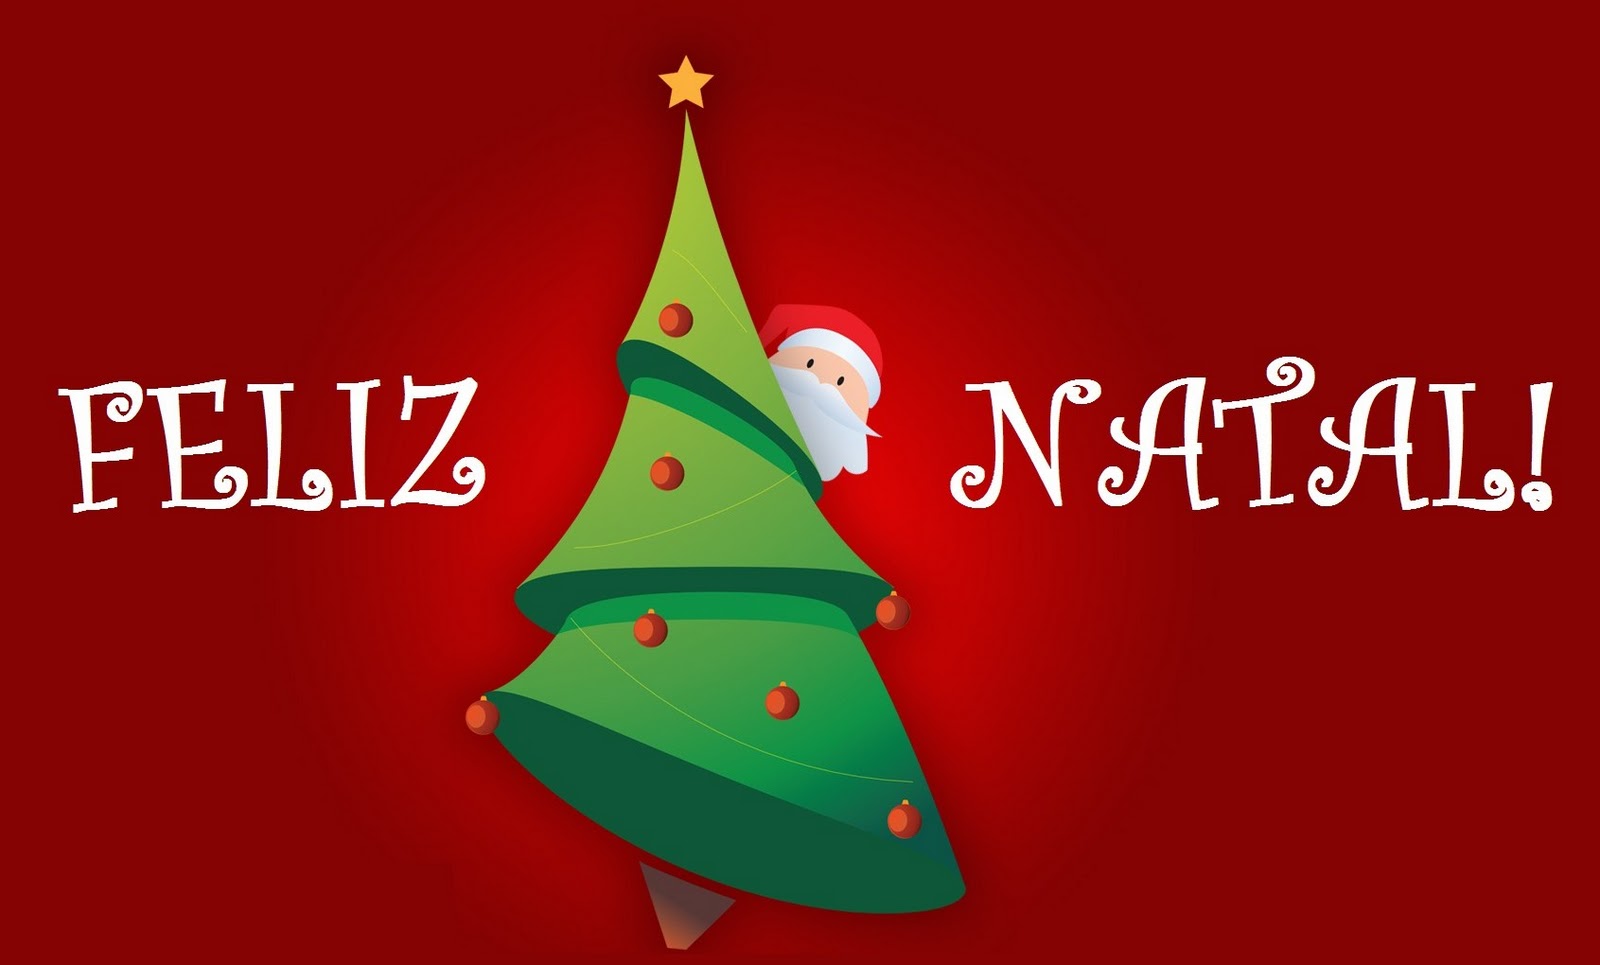 tapete natal,weihnachtsbaum,weihnachtsdekoration,weihnachten,weihnachtsschmuck,heiligabend